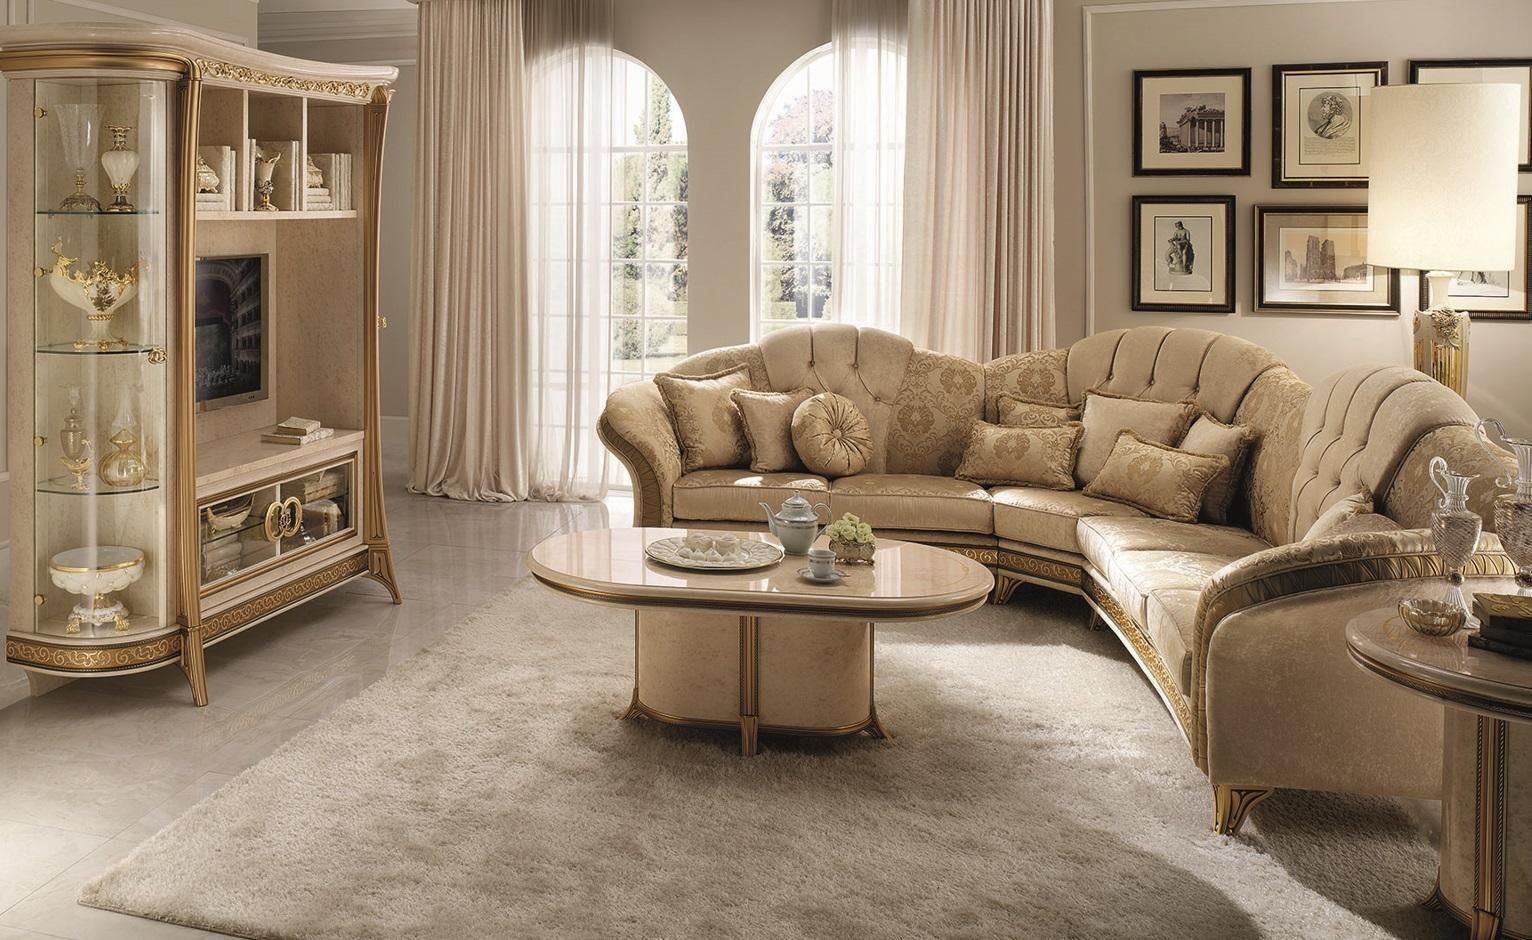 JVmoebel Ecksofa Beiges L-Form Luxus Couch Modernes Sofa Polstermöbel Neu, Made in Europe